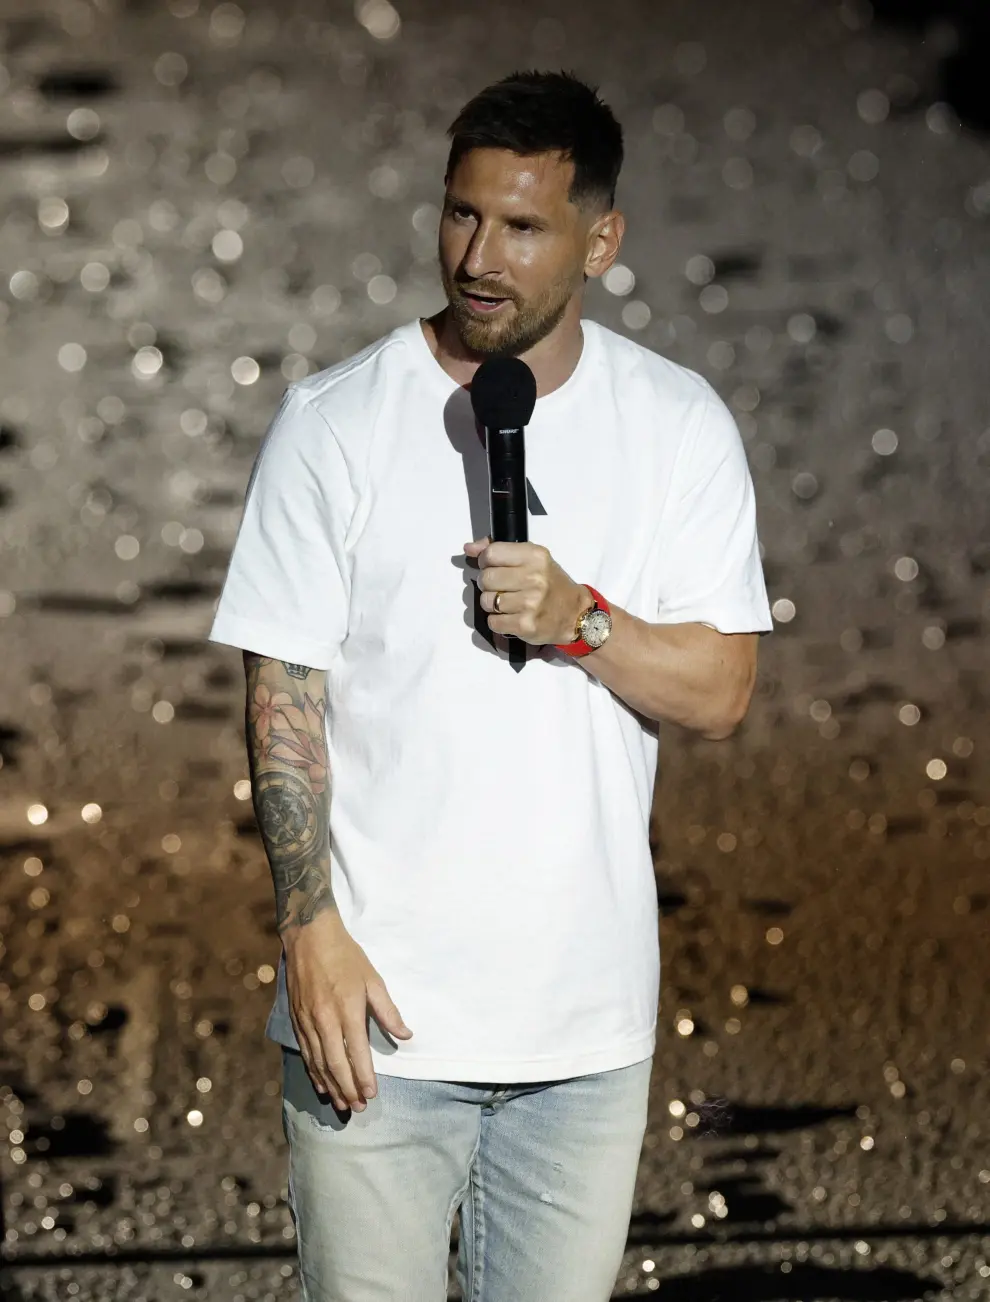 Presentación de Messi en Miami.